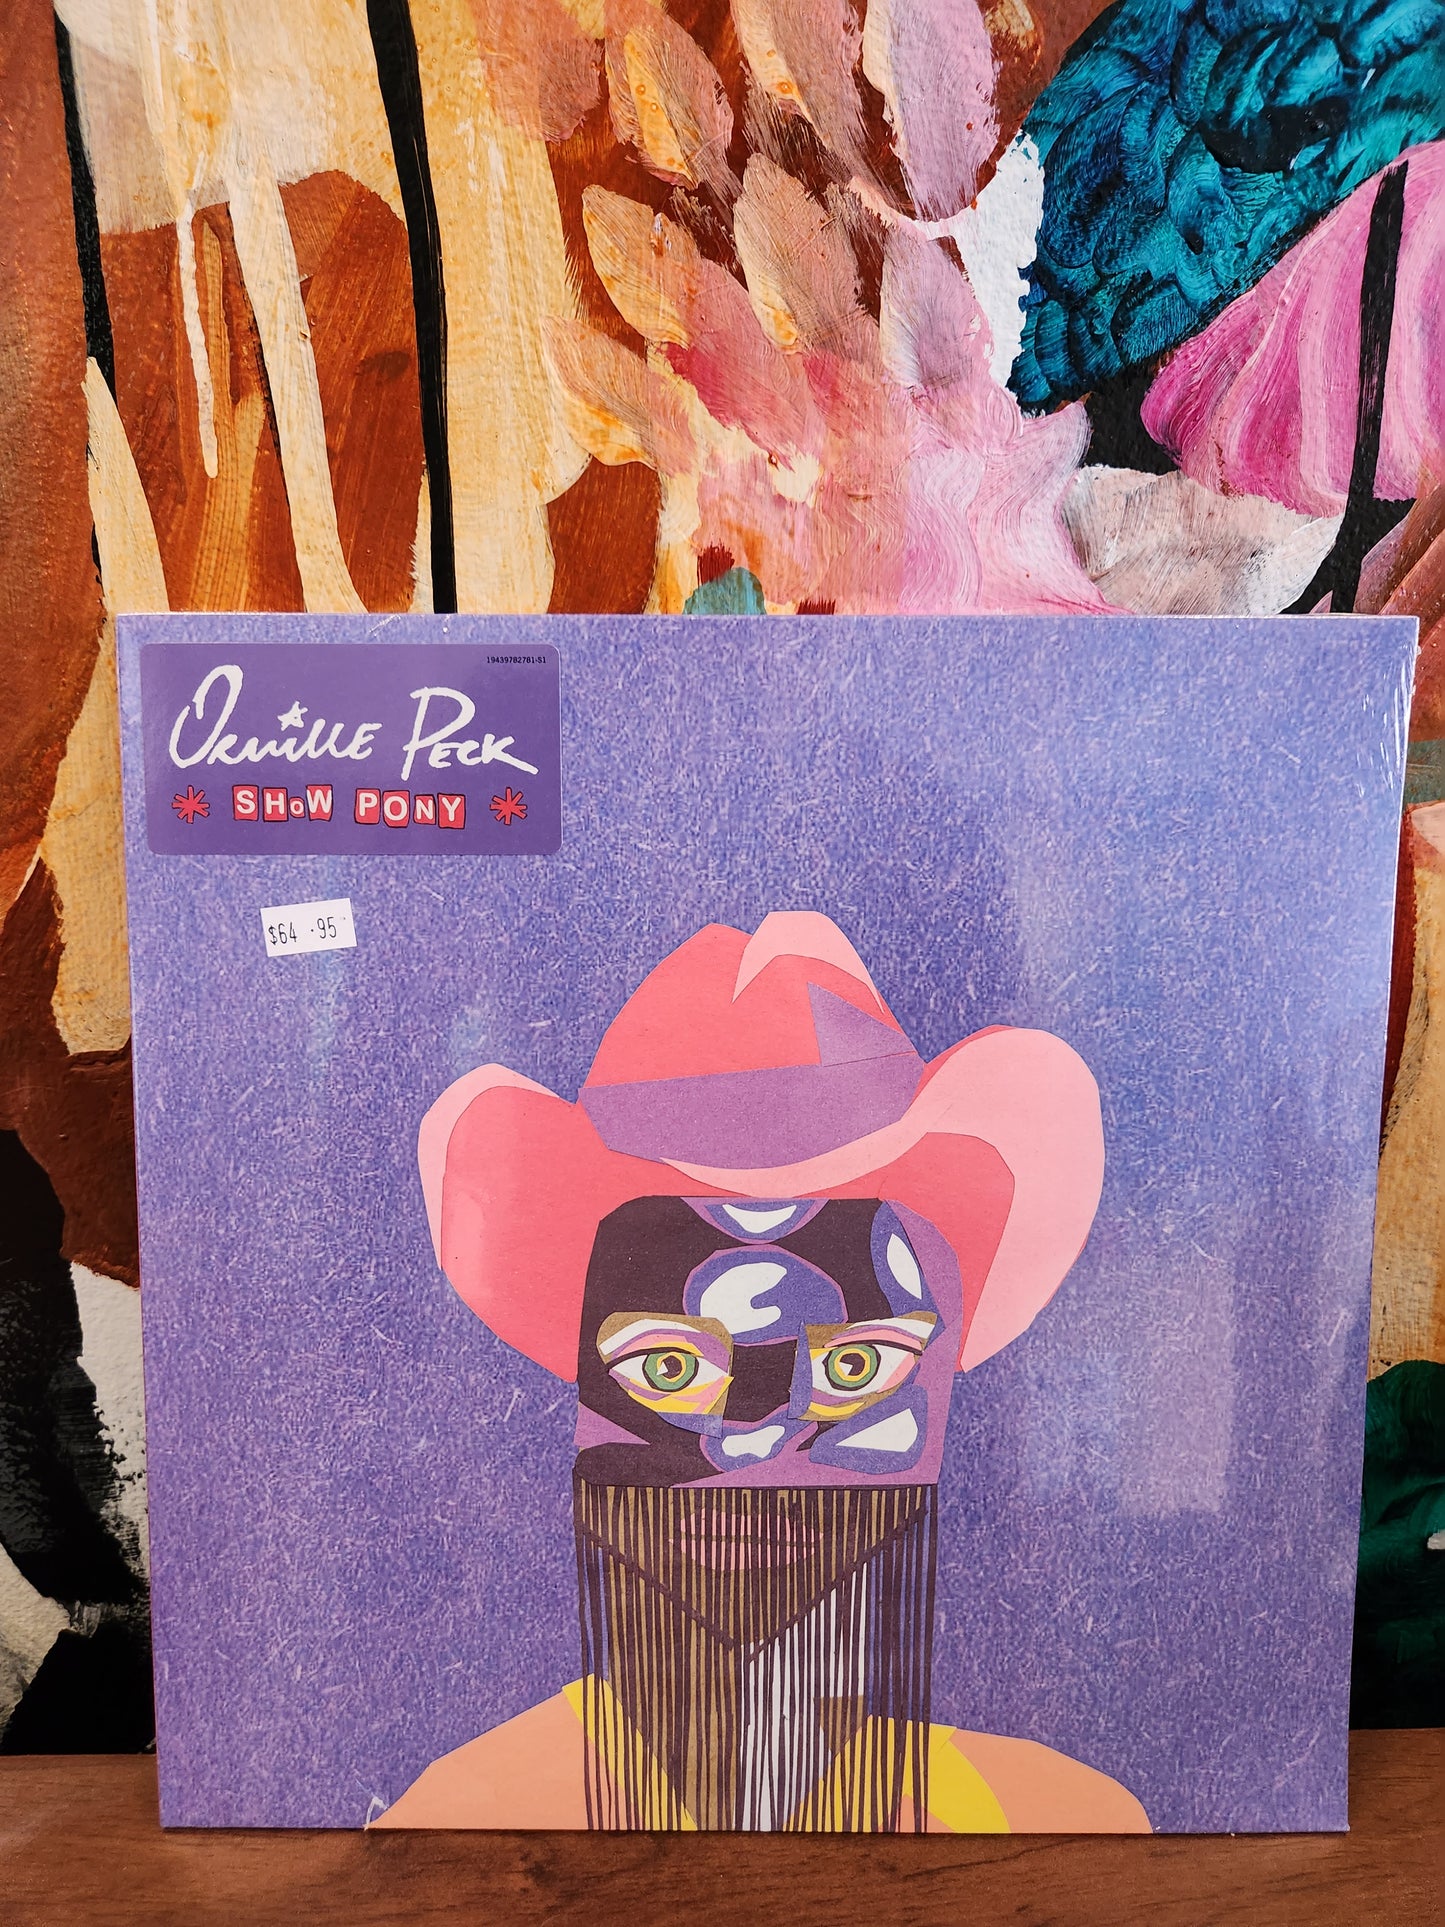 Orville Peck - Show Pony - Vinyl LP